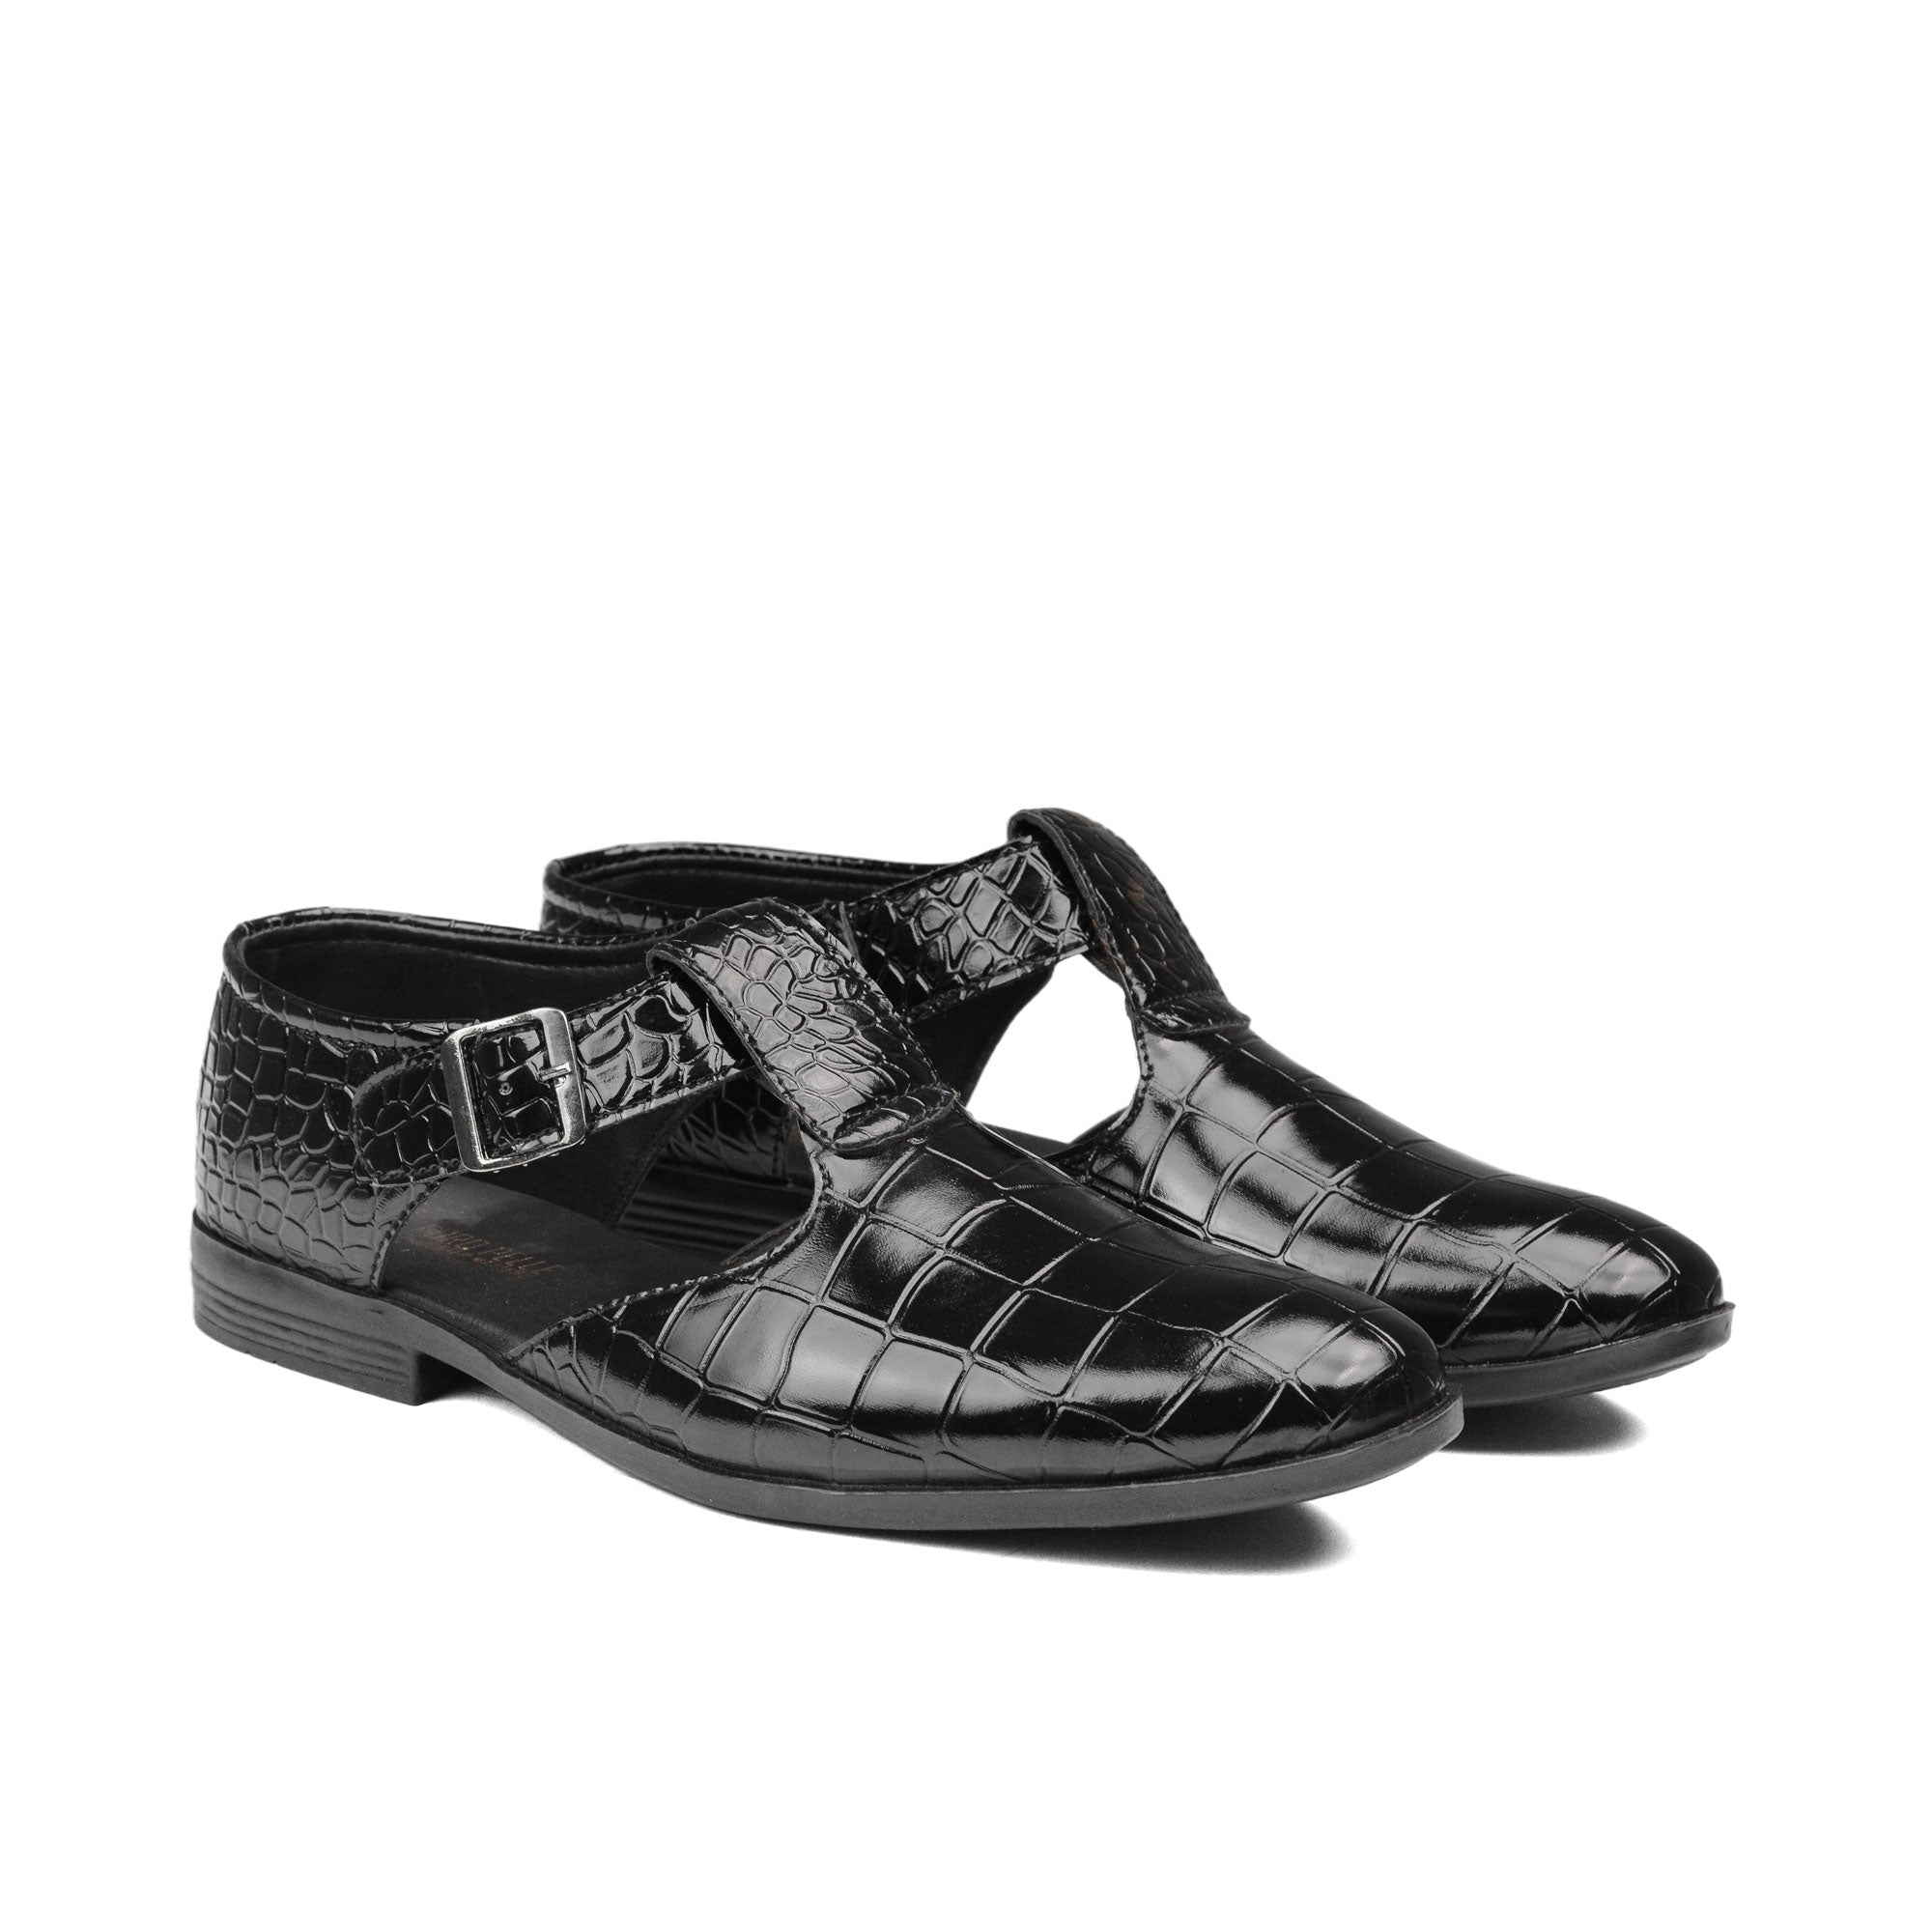 Black Croc Patent Sandals DU02